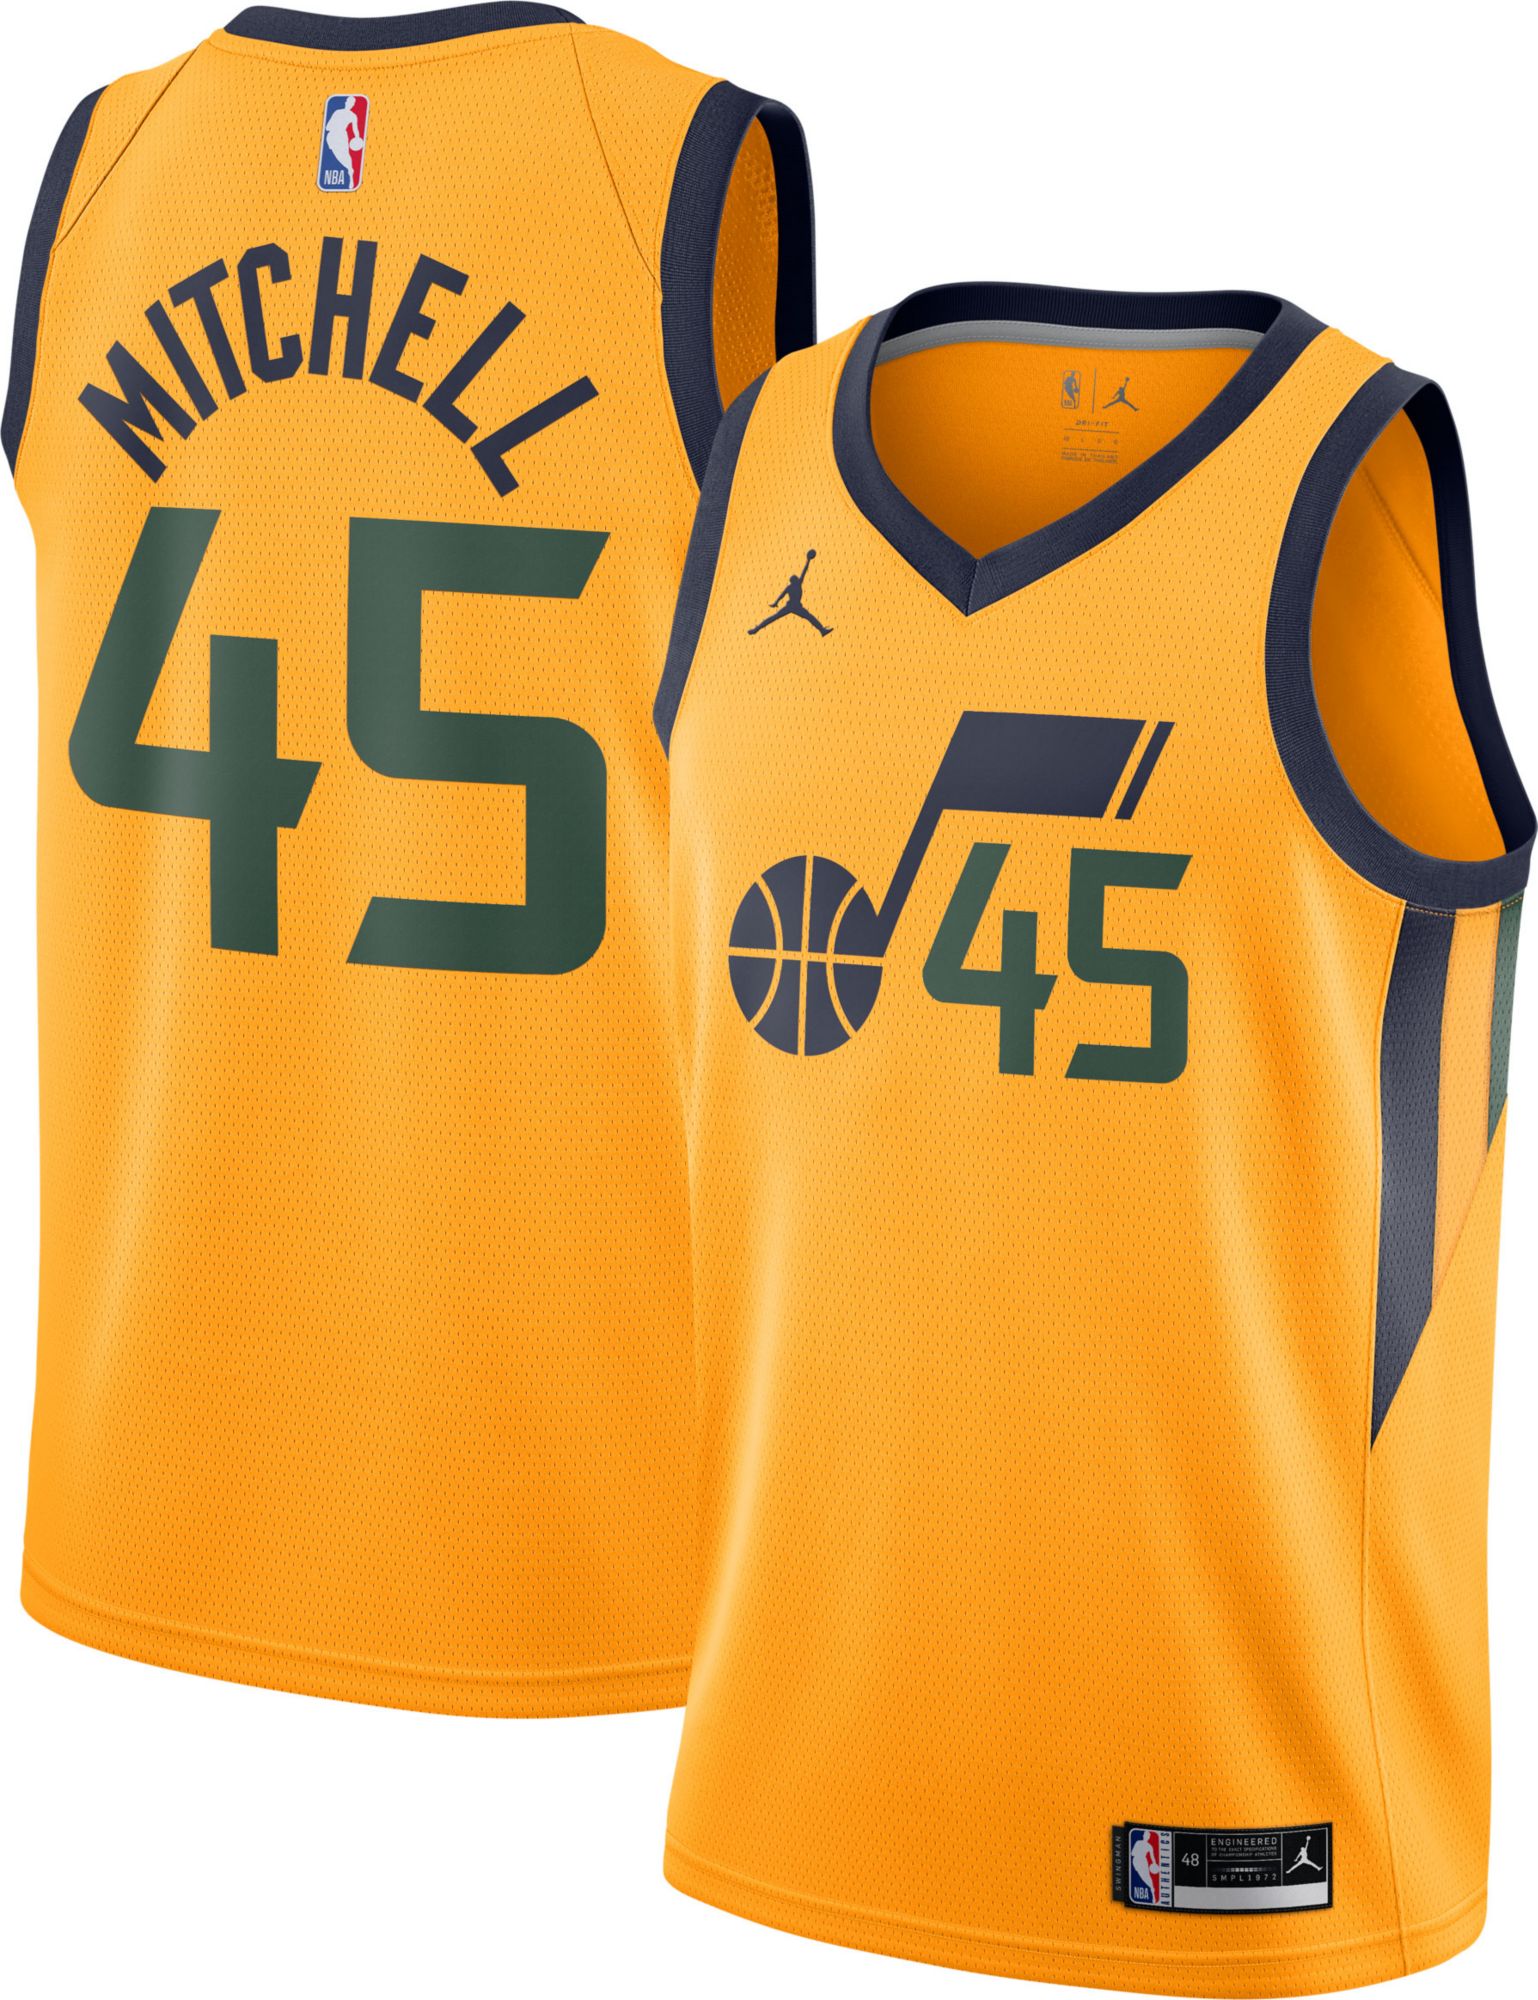 Nike, Shirts, Utah Jazz Donovan Mitchell Jersey Nba